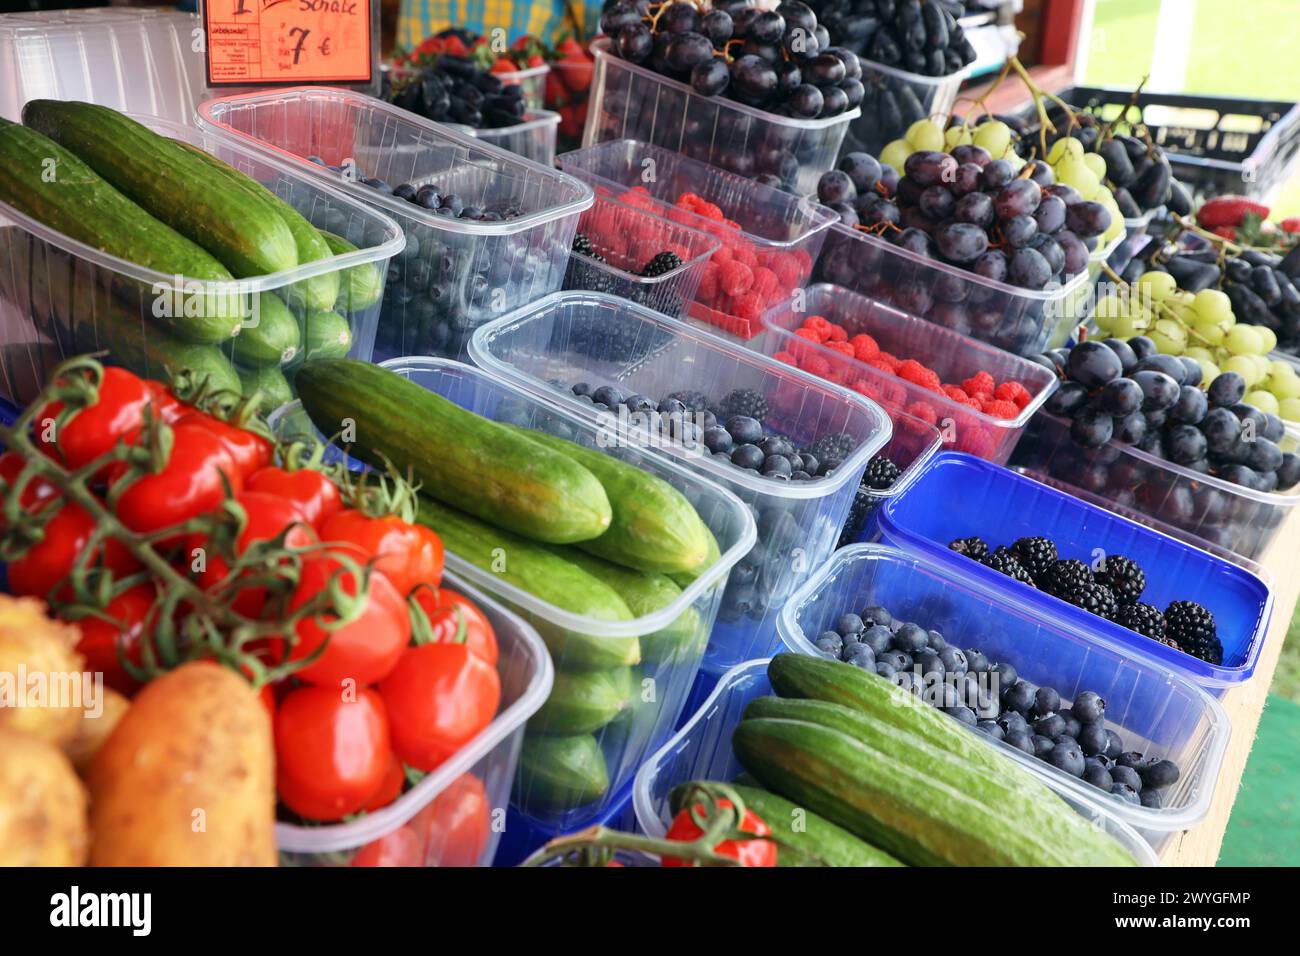 Obst als gesundes Nahrungsmittel viele verschiedene Obstsorten liegen an einem Obststand zum Verkauf bereit *** Obst als gesundes Lebensmittel stehen an einem Obststand viele verschiedene Obstsorten zum Verkauf zur Verfügung Stockfoto